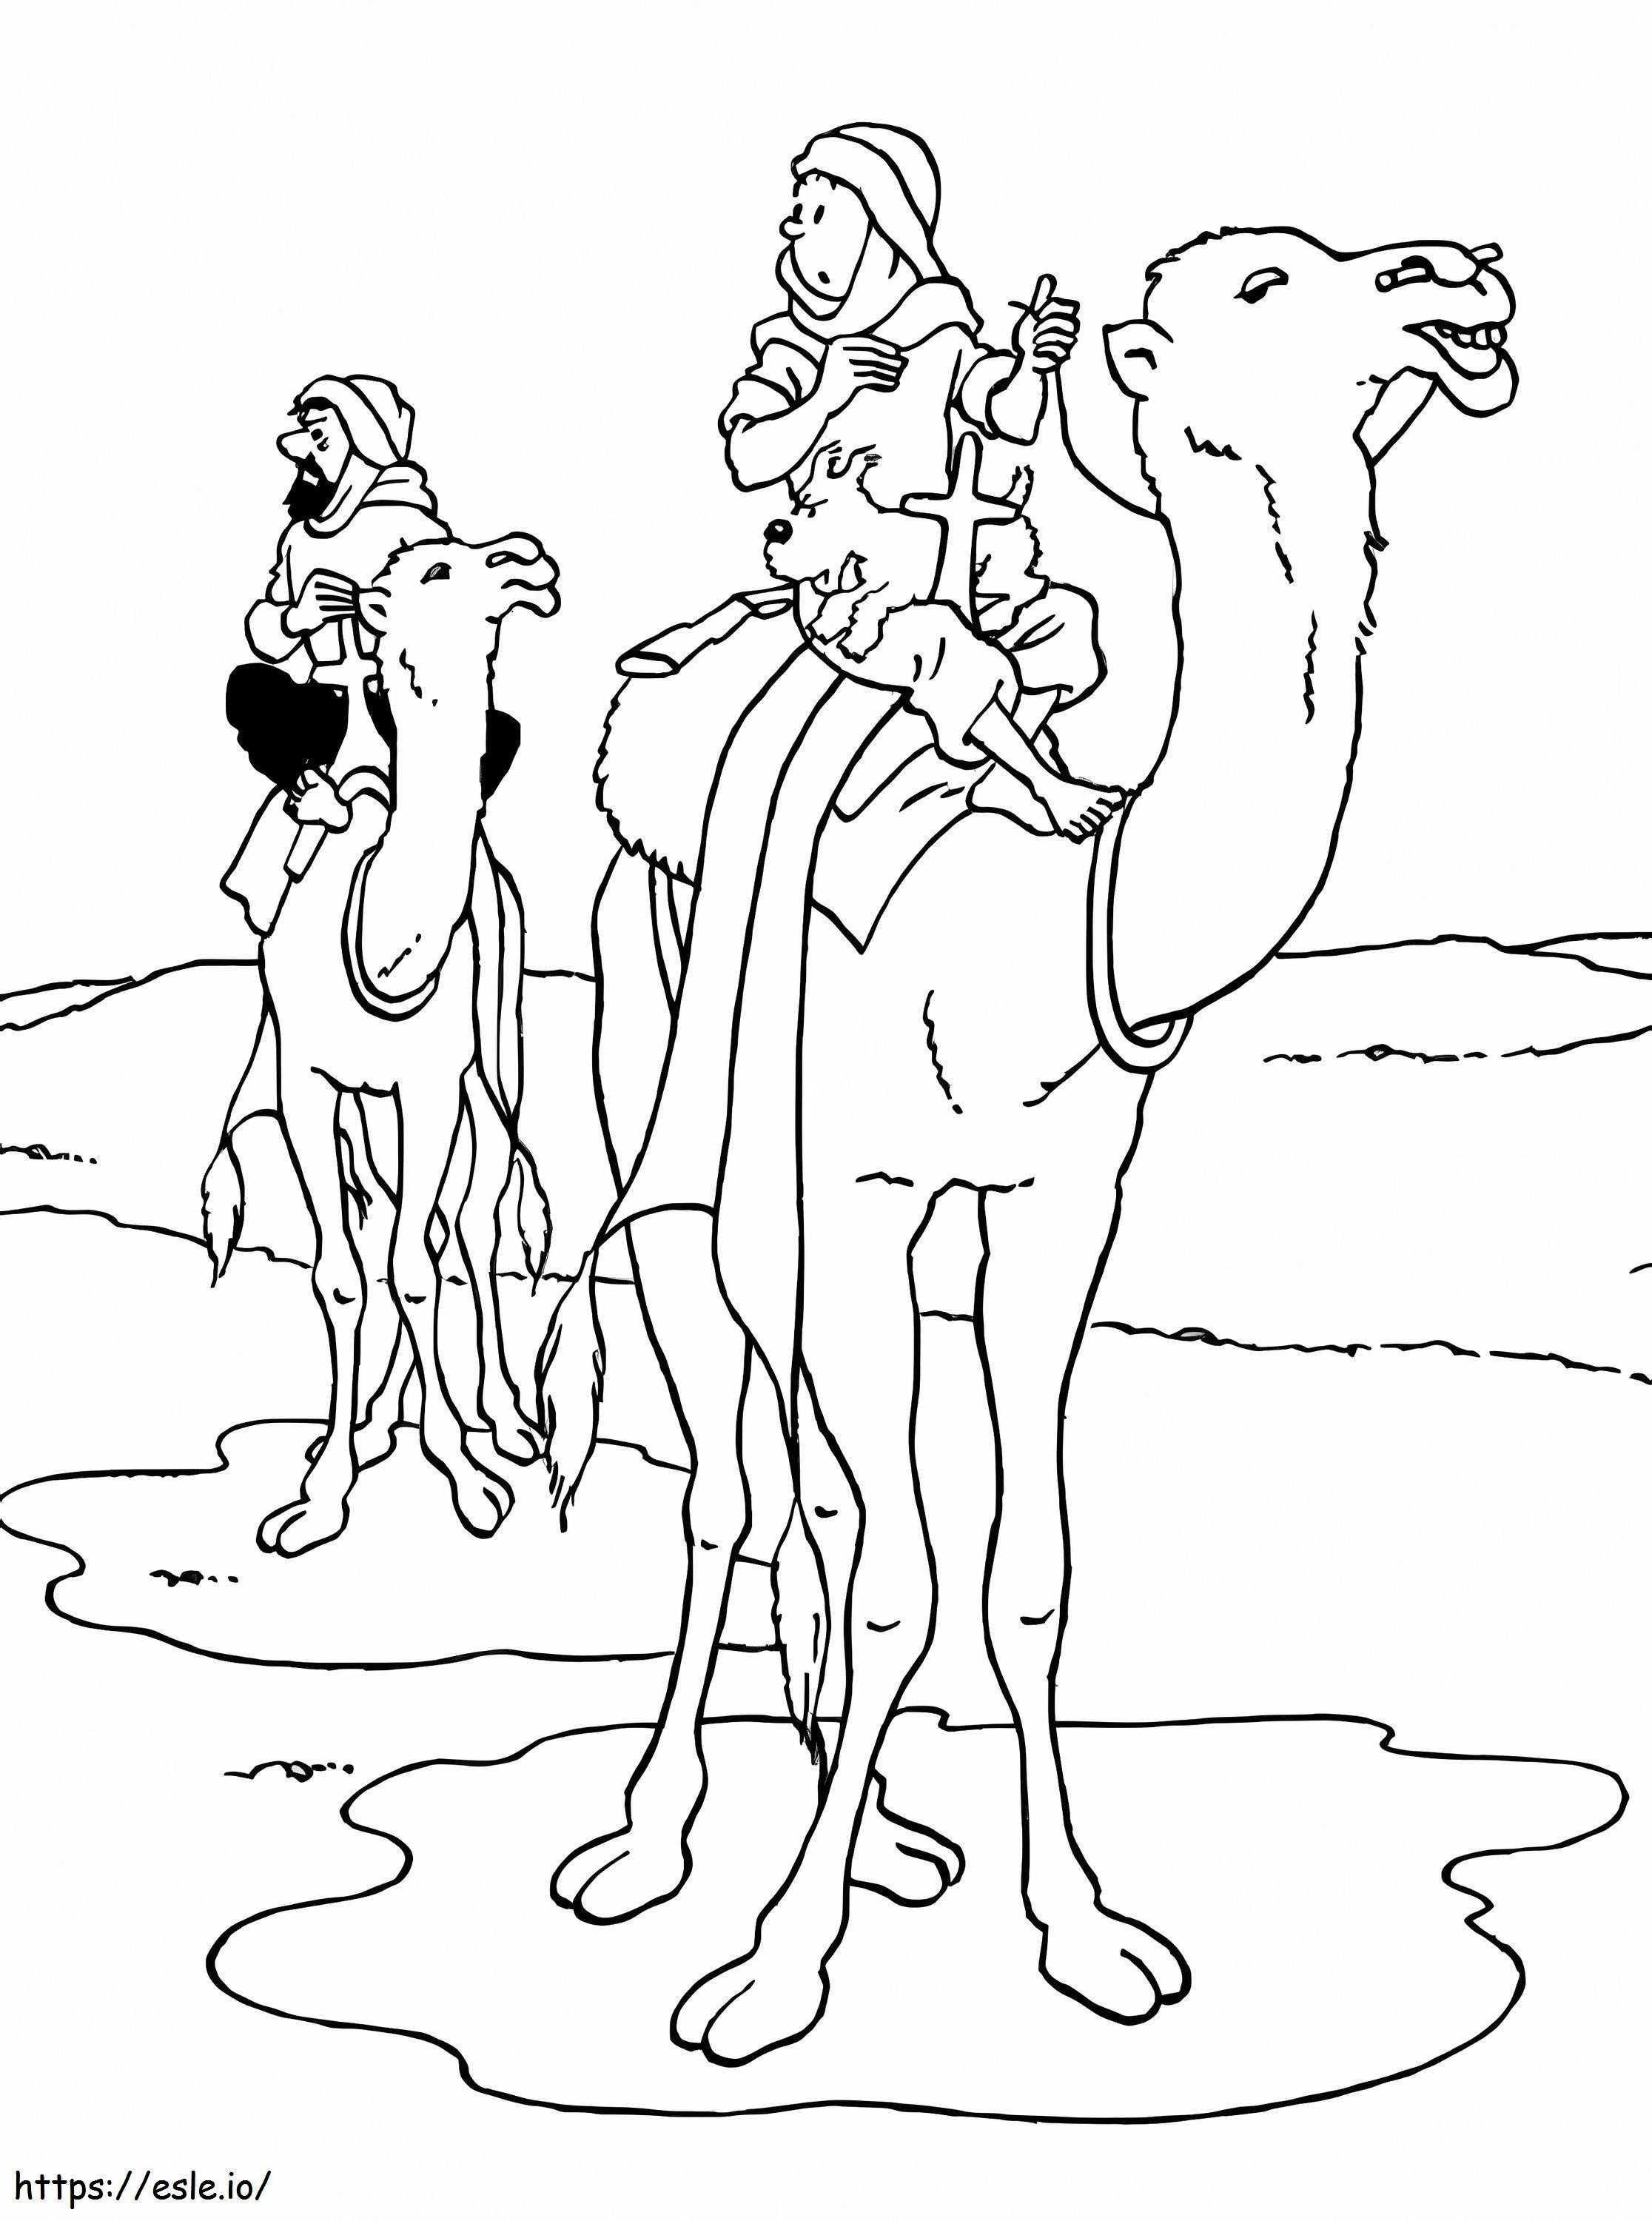 Tim und Struppi reiten auf einem Kamel ausmalbilder